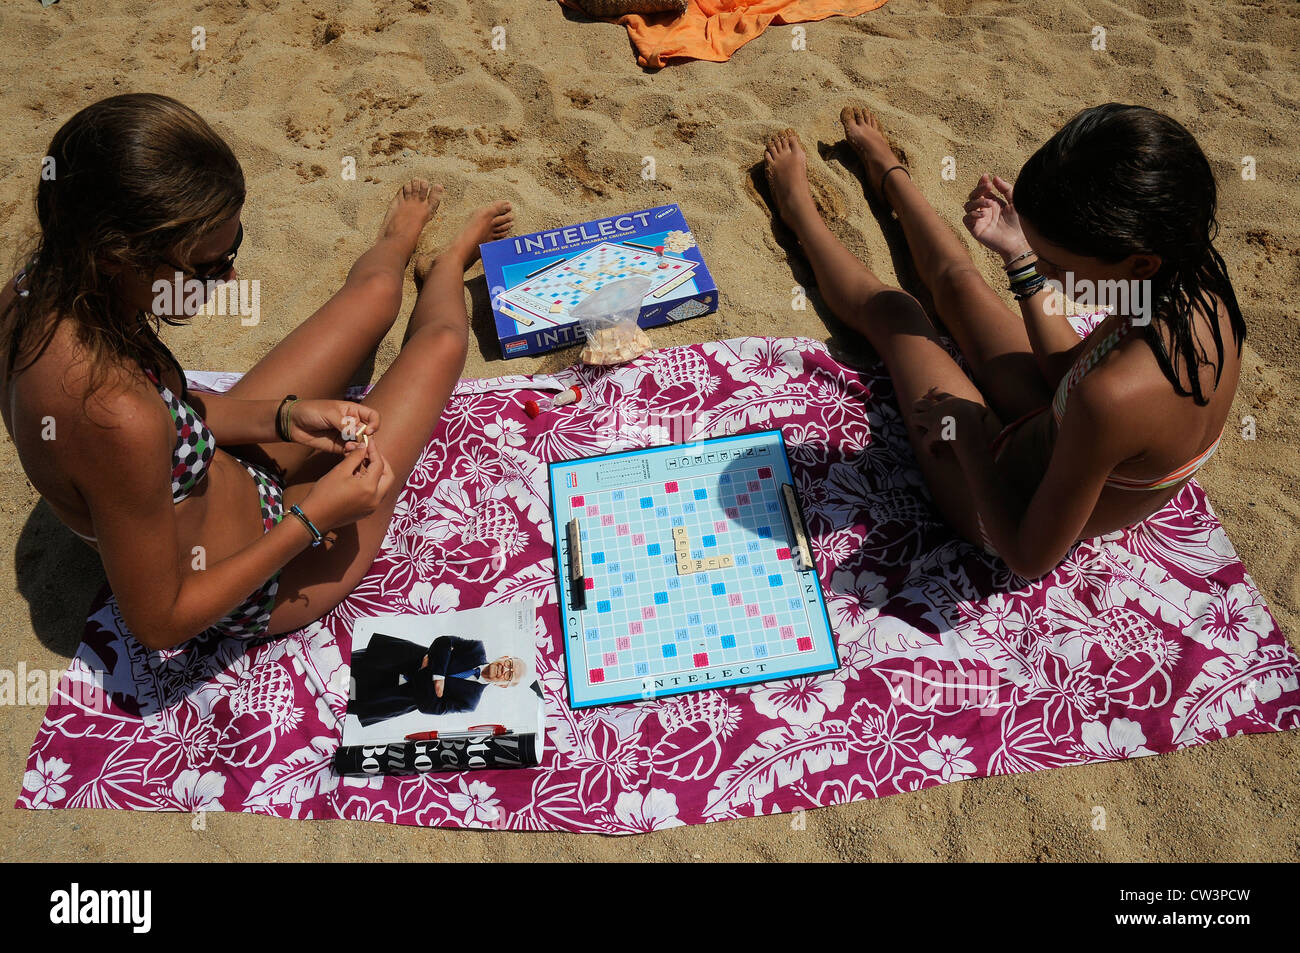 YOUNG GIRLS ON THE BEACH PLAYING INTELECT SANT FELIU DE GUIXOLS GIRONA CATALONIA SPAIN Stock Photo